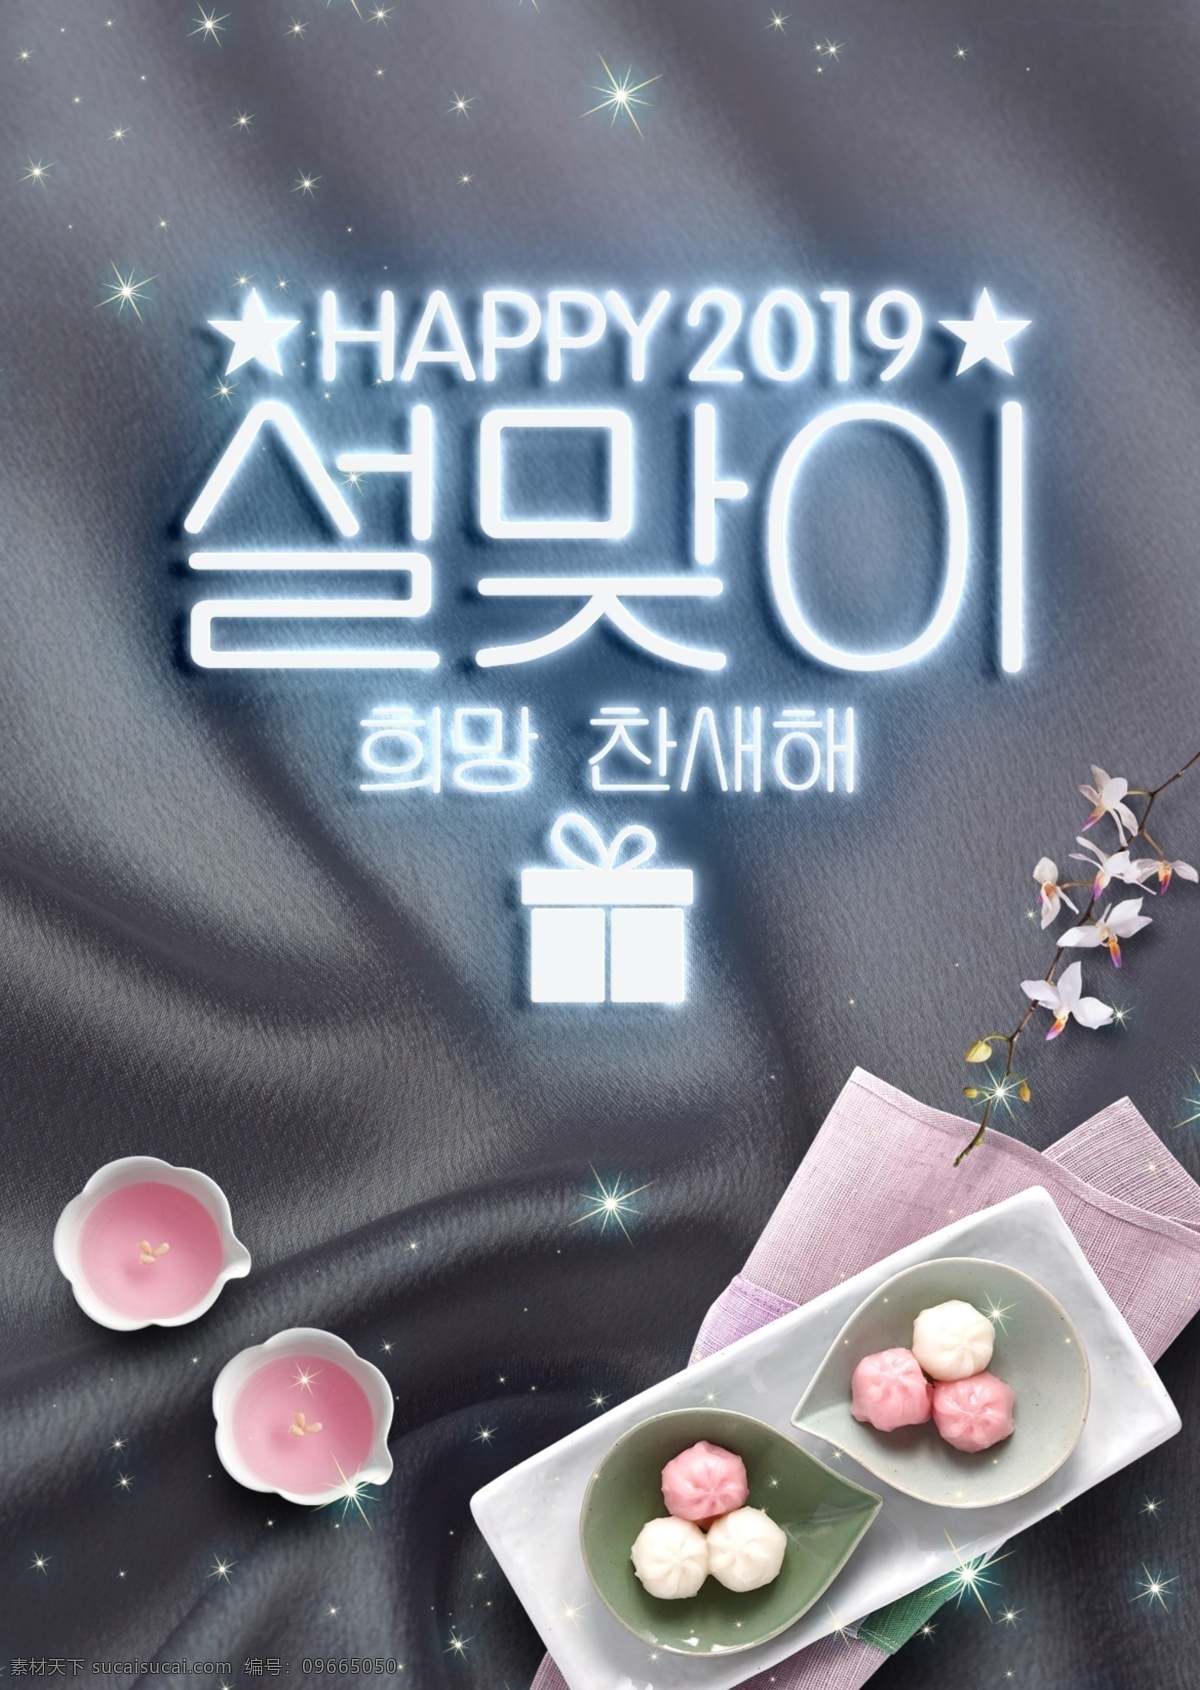 丝绸 质感 霓虹灯 韩国 春节 宣传海报 2019 零食 肝药 尼温新语 新年 迎春 传统 时装 海报 现代 宣传